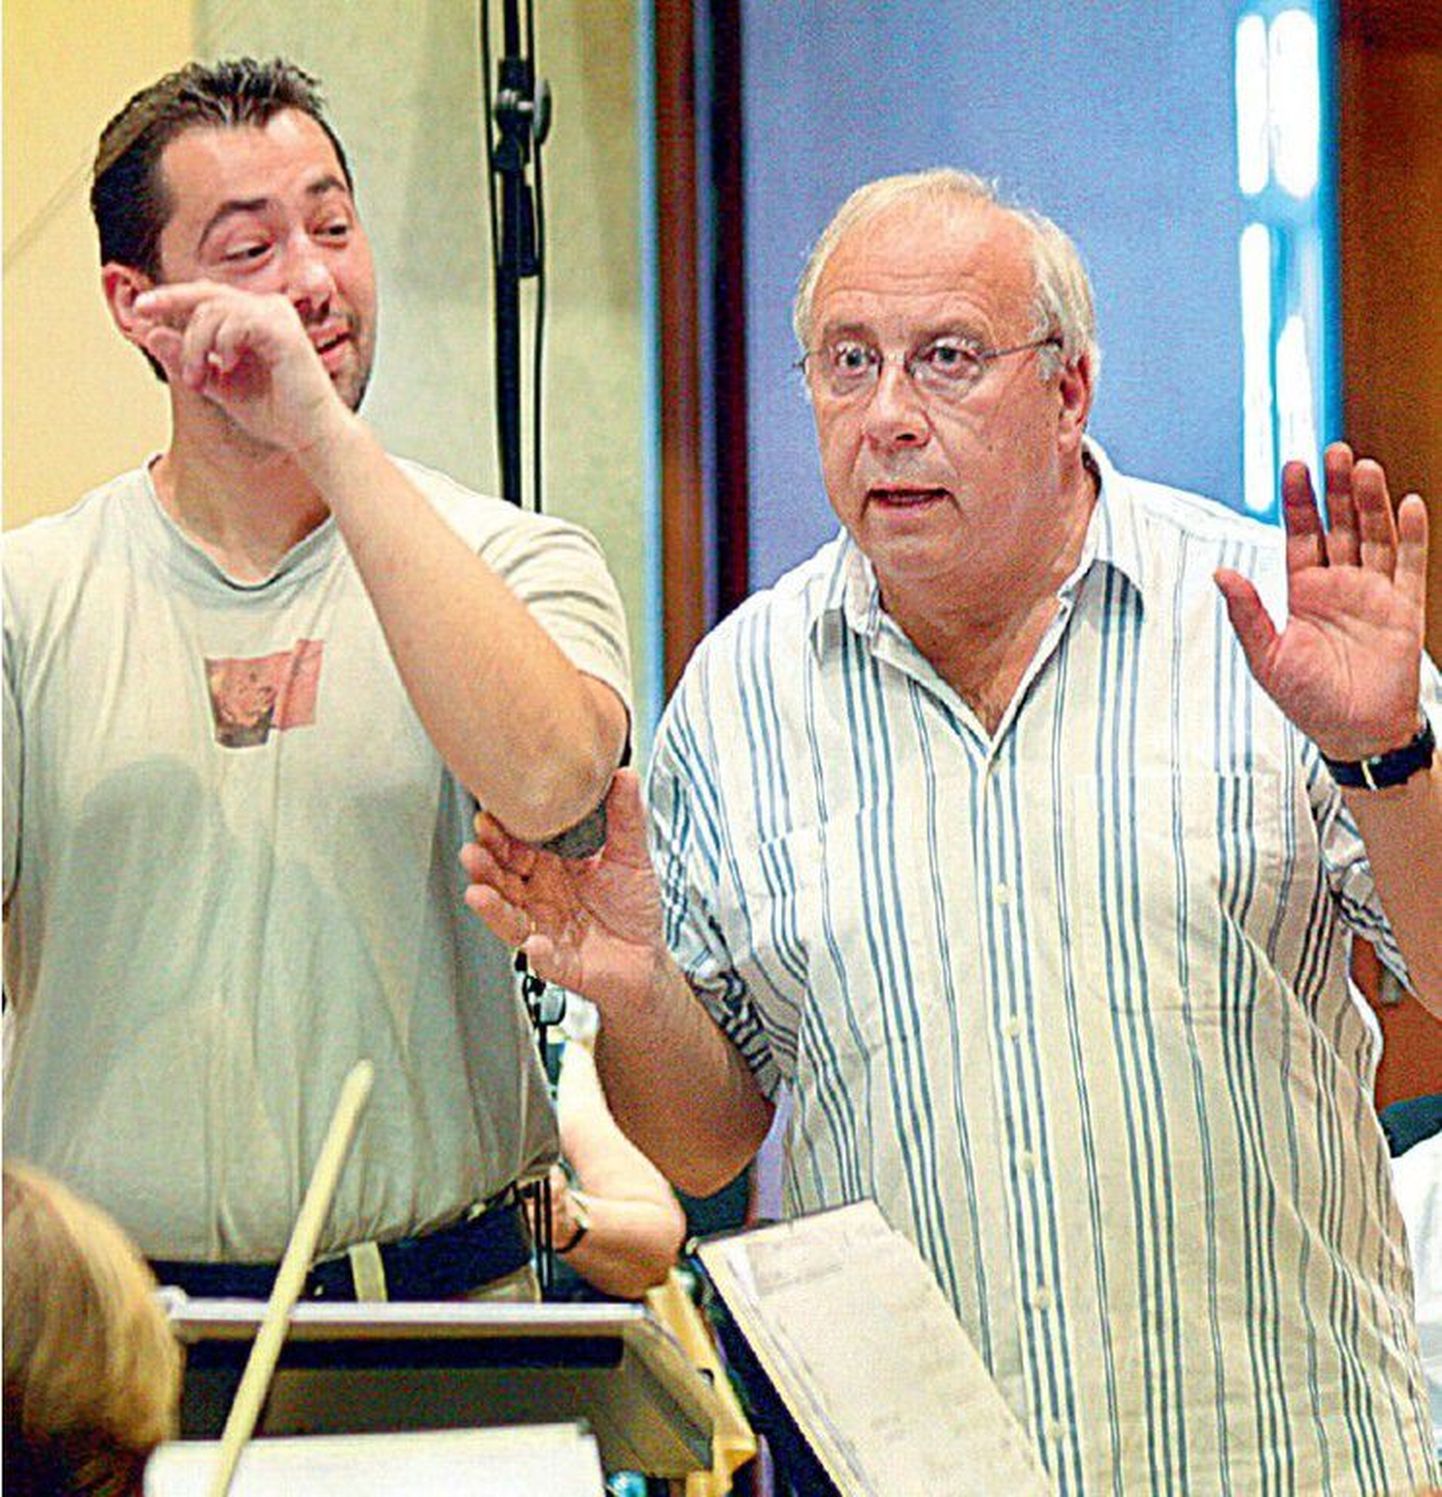 Alates 2000. aastast juhatab Neeme Järvi (paremal) suviti Pärnus David Oistrahhi festivalil dirigentide
suveakadeemiat. Pildil Järvi meistriklass 2006. aasta juulis.